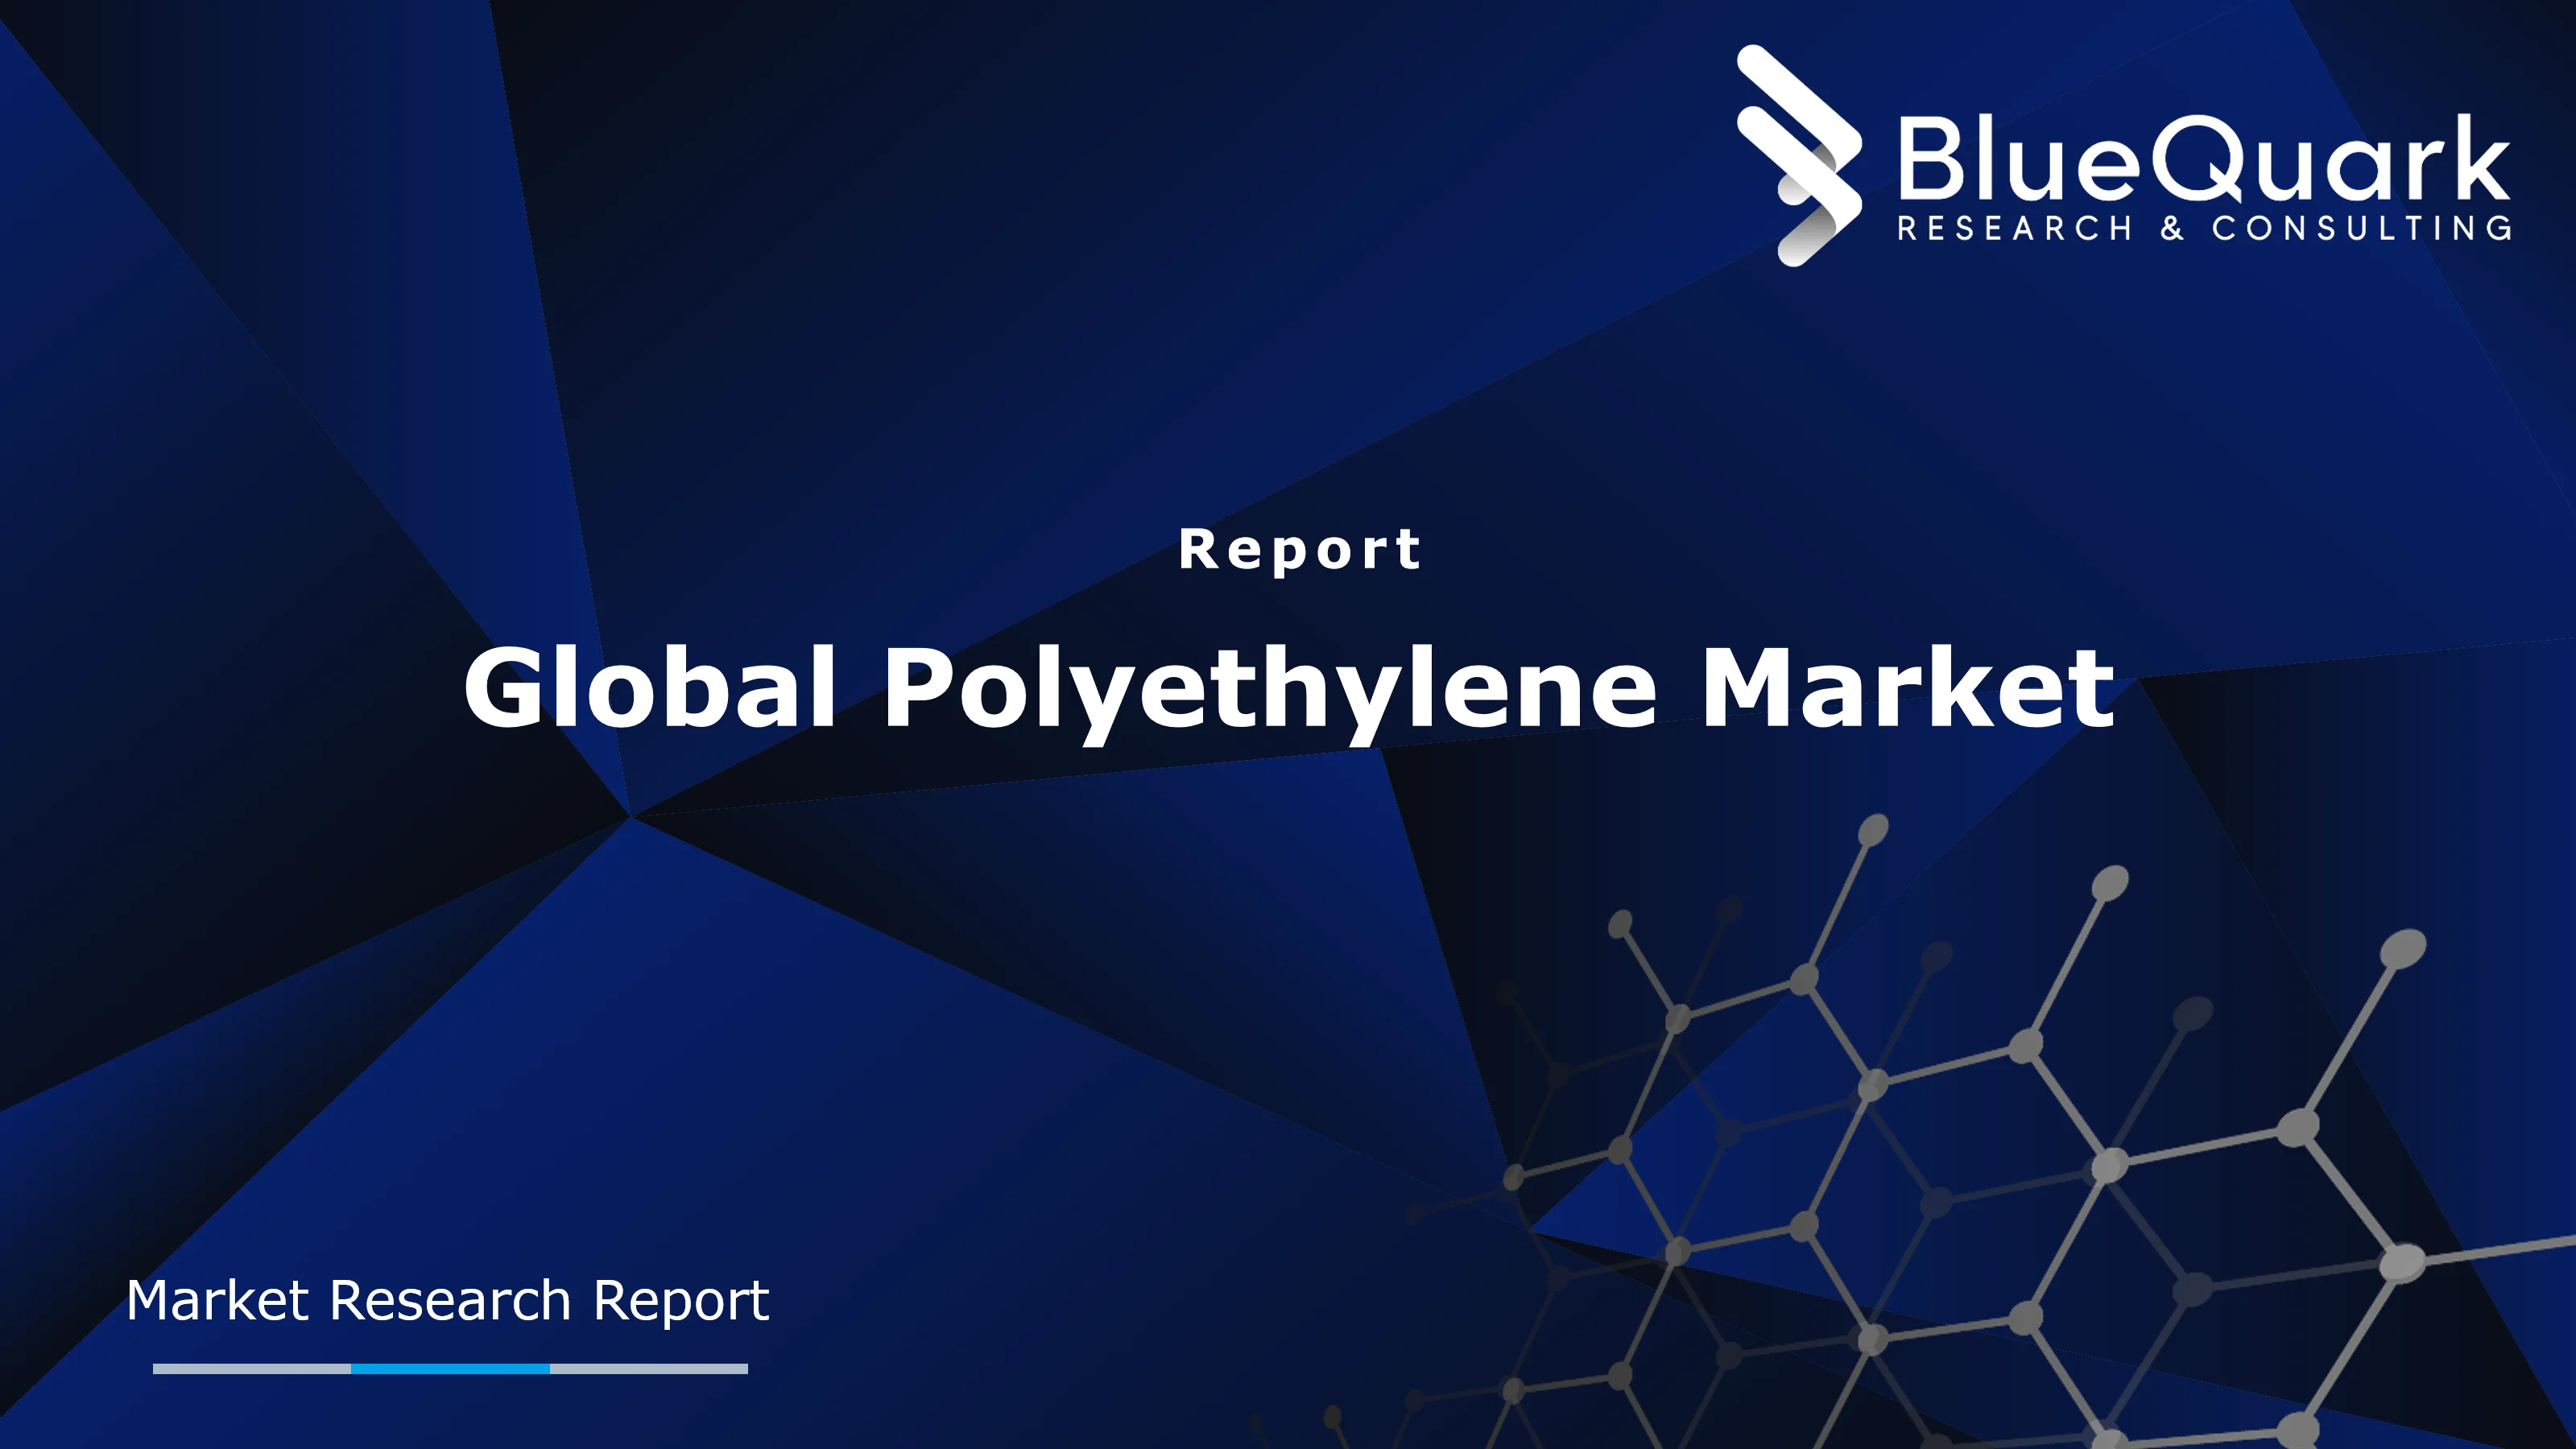 Global Polyethylene Market Outlook to 2029